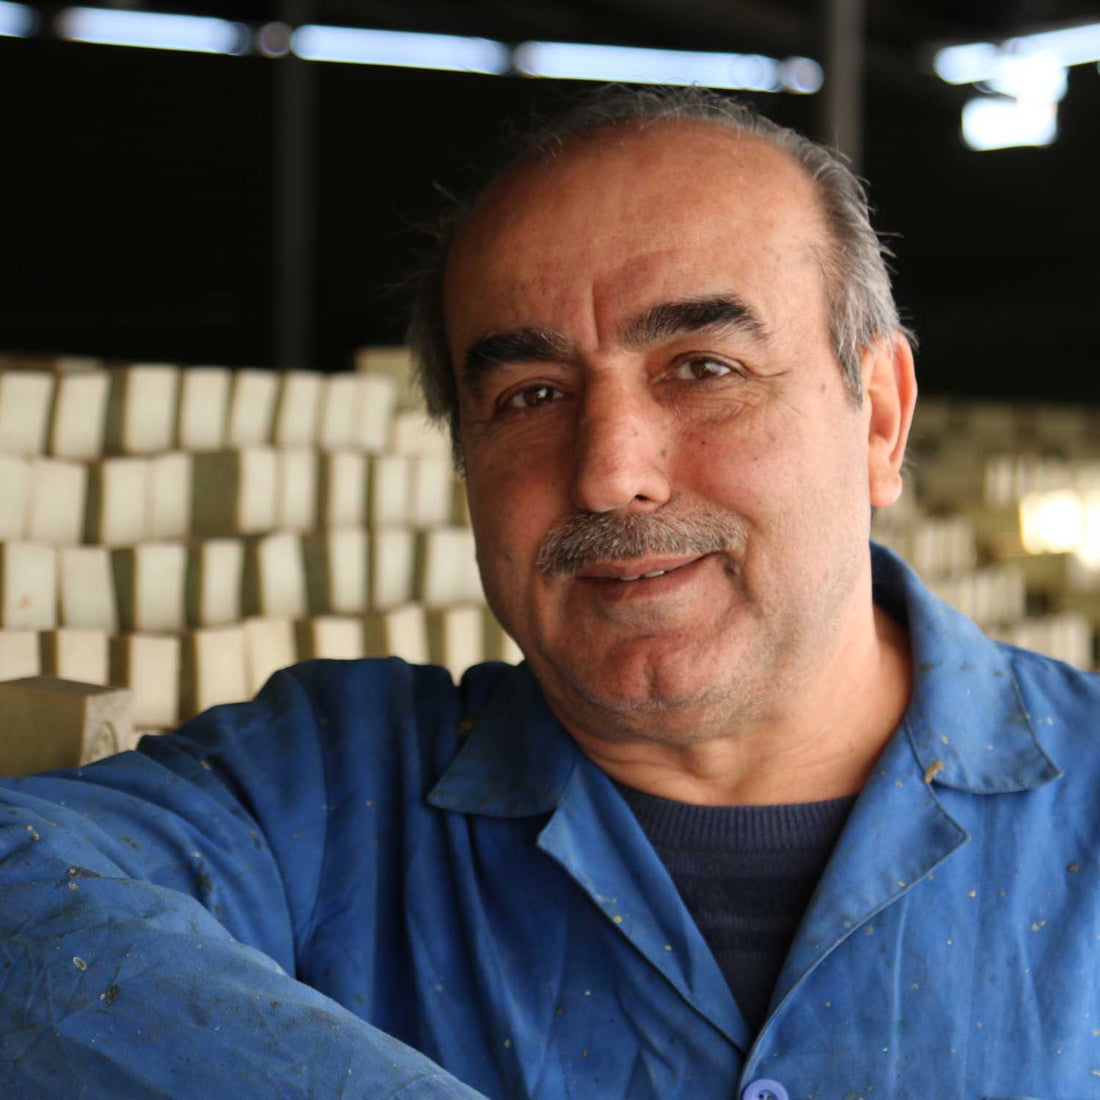 Syrian soap maker of Sabun gear